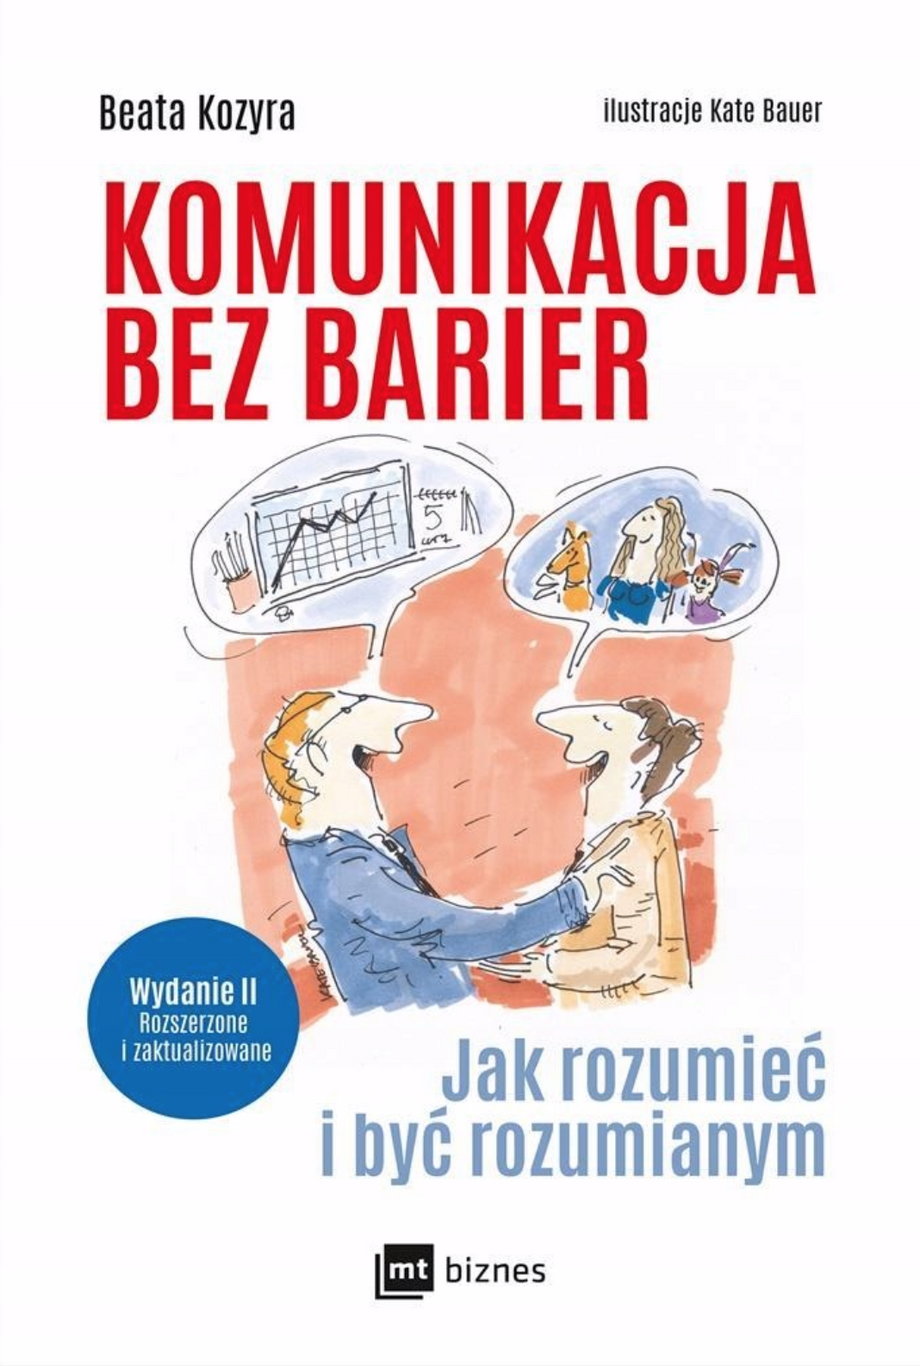 "Komunikacja bez barier. Jak rozumieć i być rozumianym" Beata Kozyra